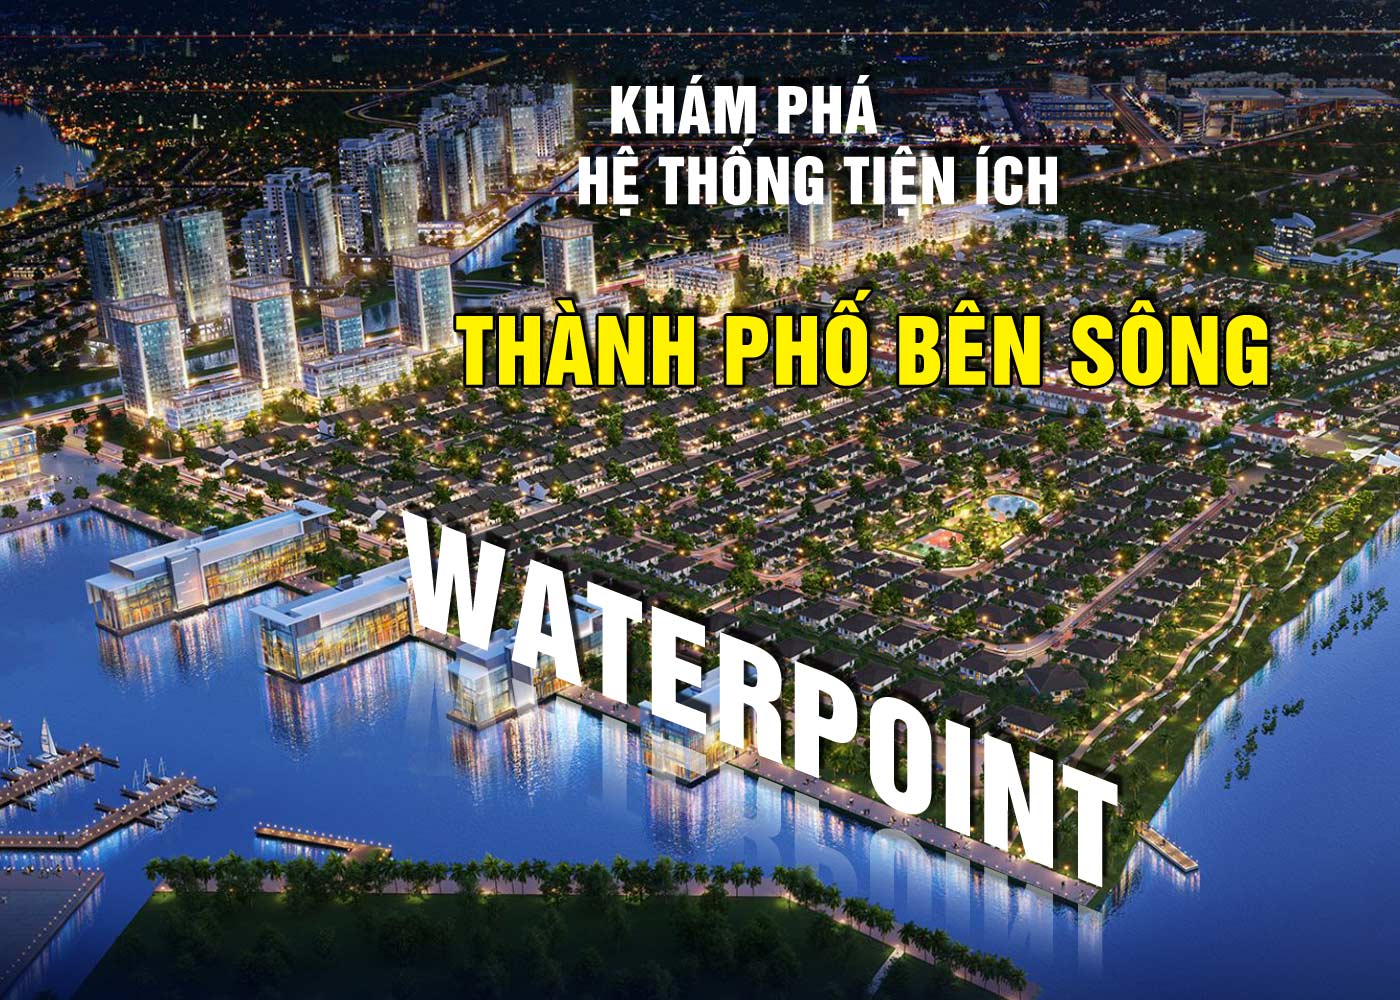 Khám phá hệ thống tiện ích thành phố bên sông Waterpoint - Ảnh 1